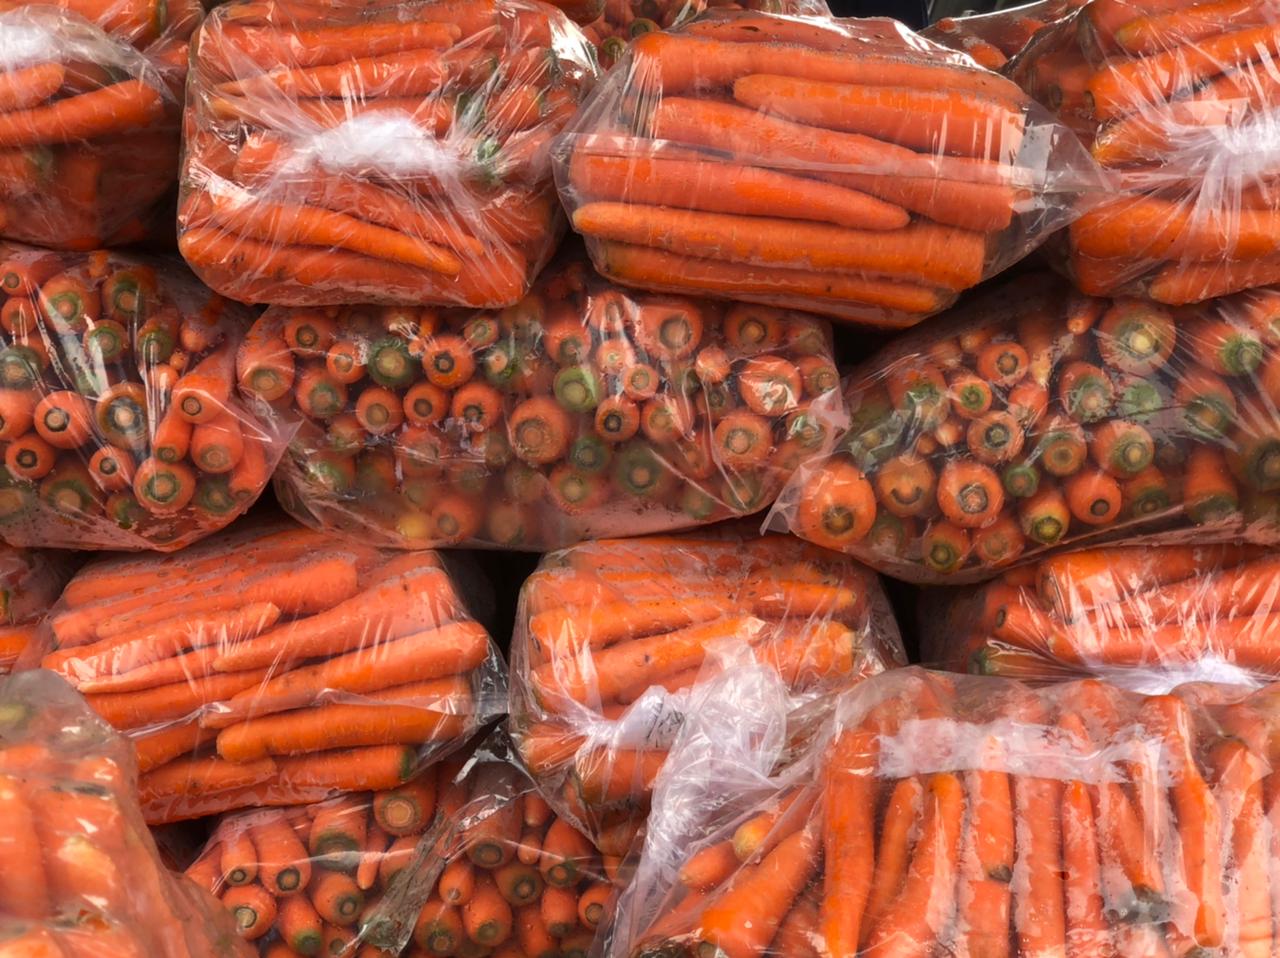 Sejumlah tumpukan wortel siap untuk di jual.